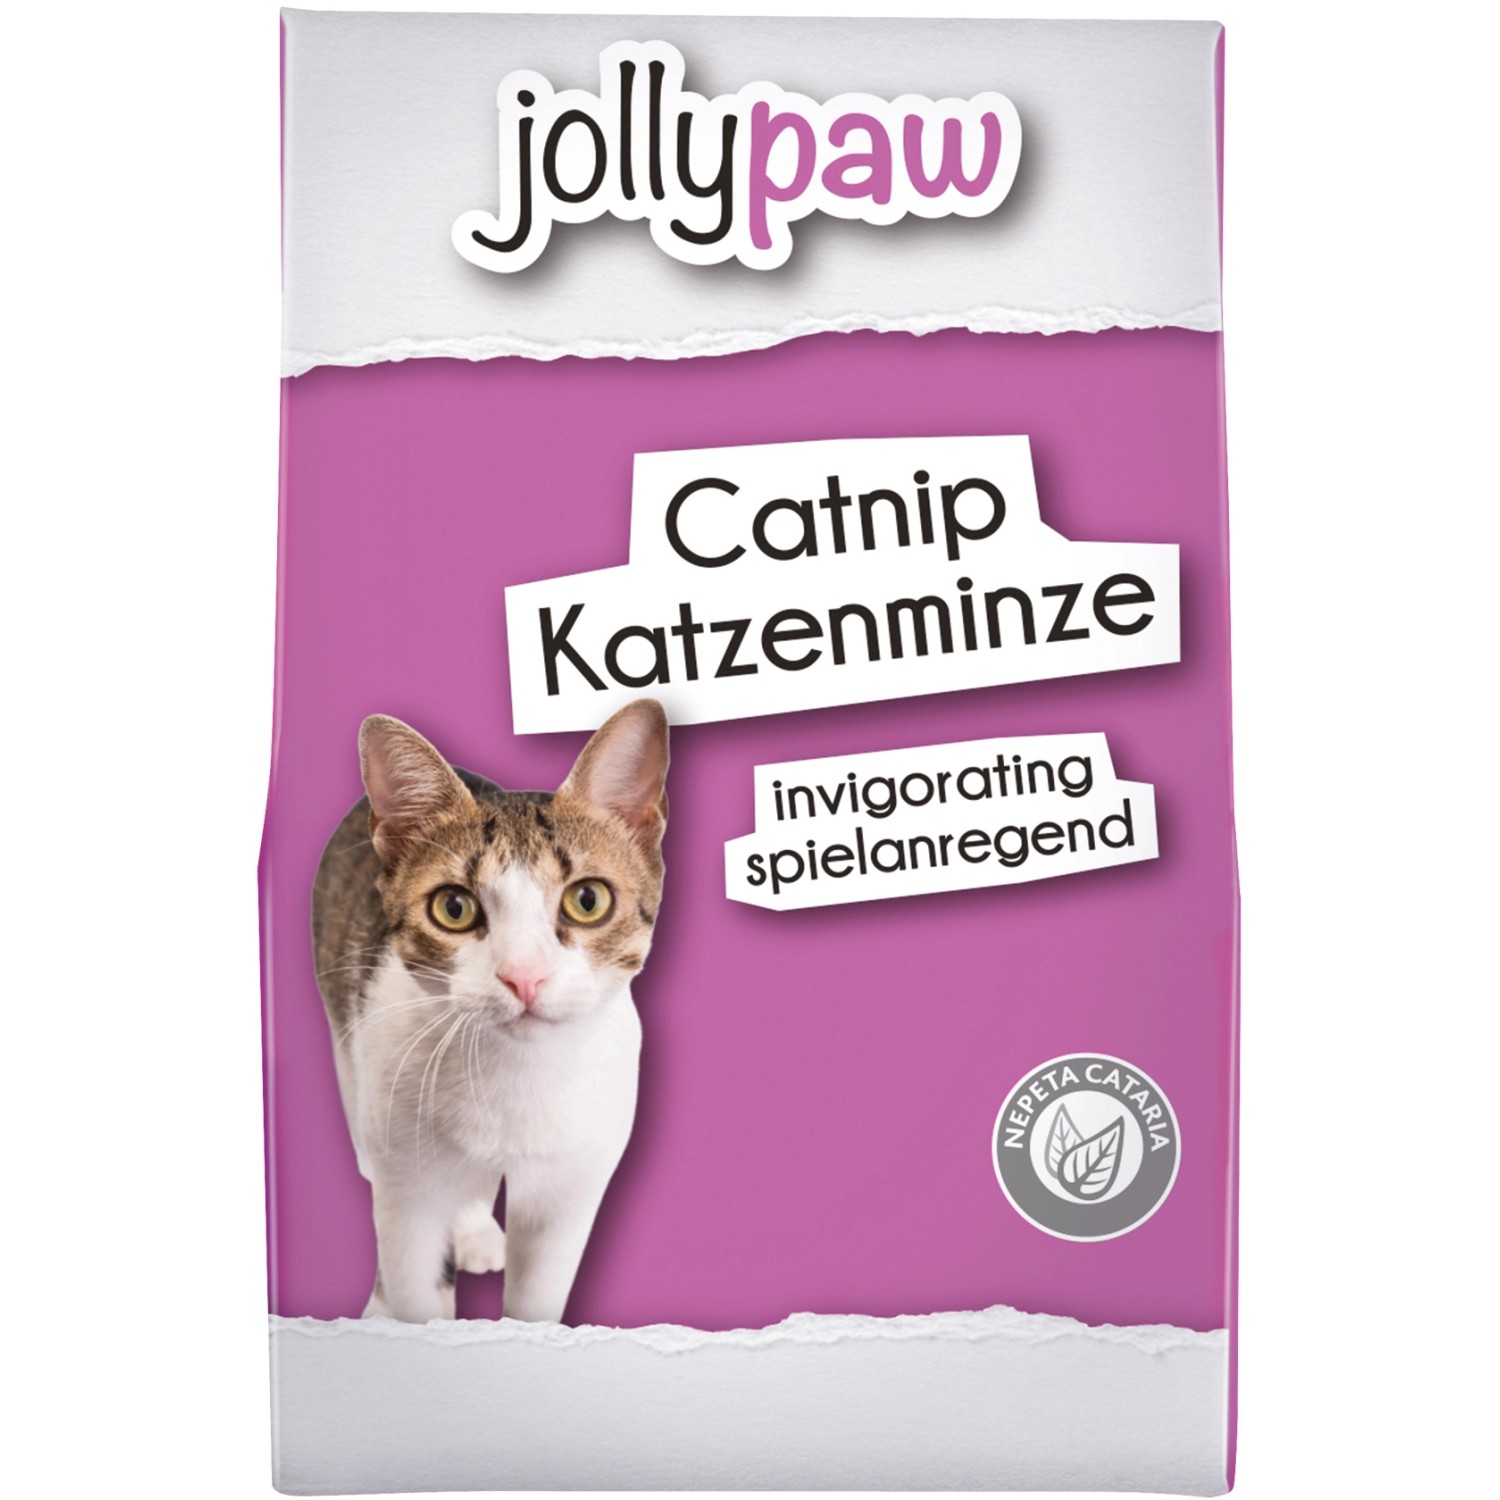 Jollypaw Katzenminze Catnip 20 g